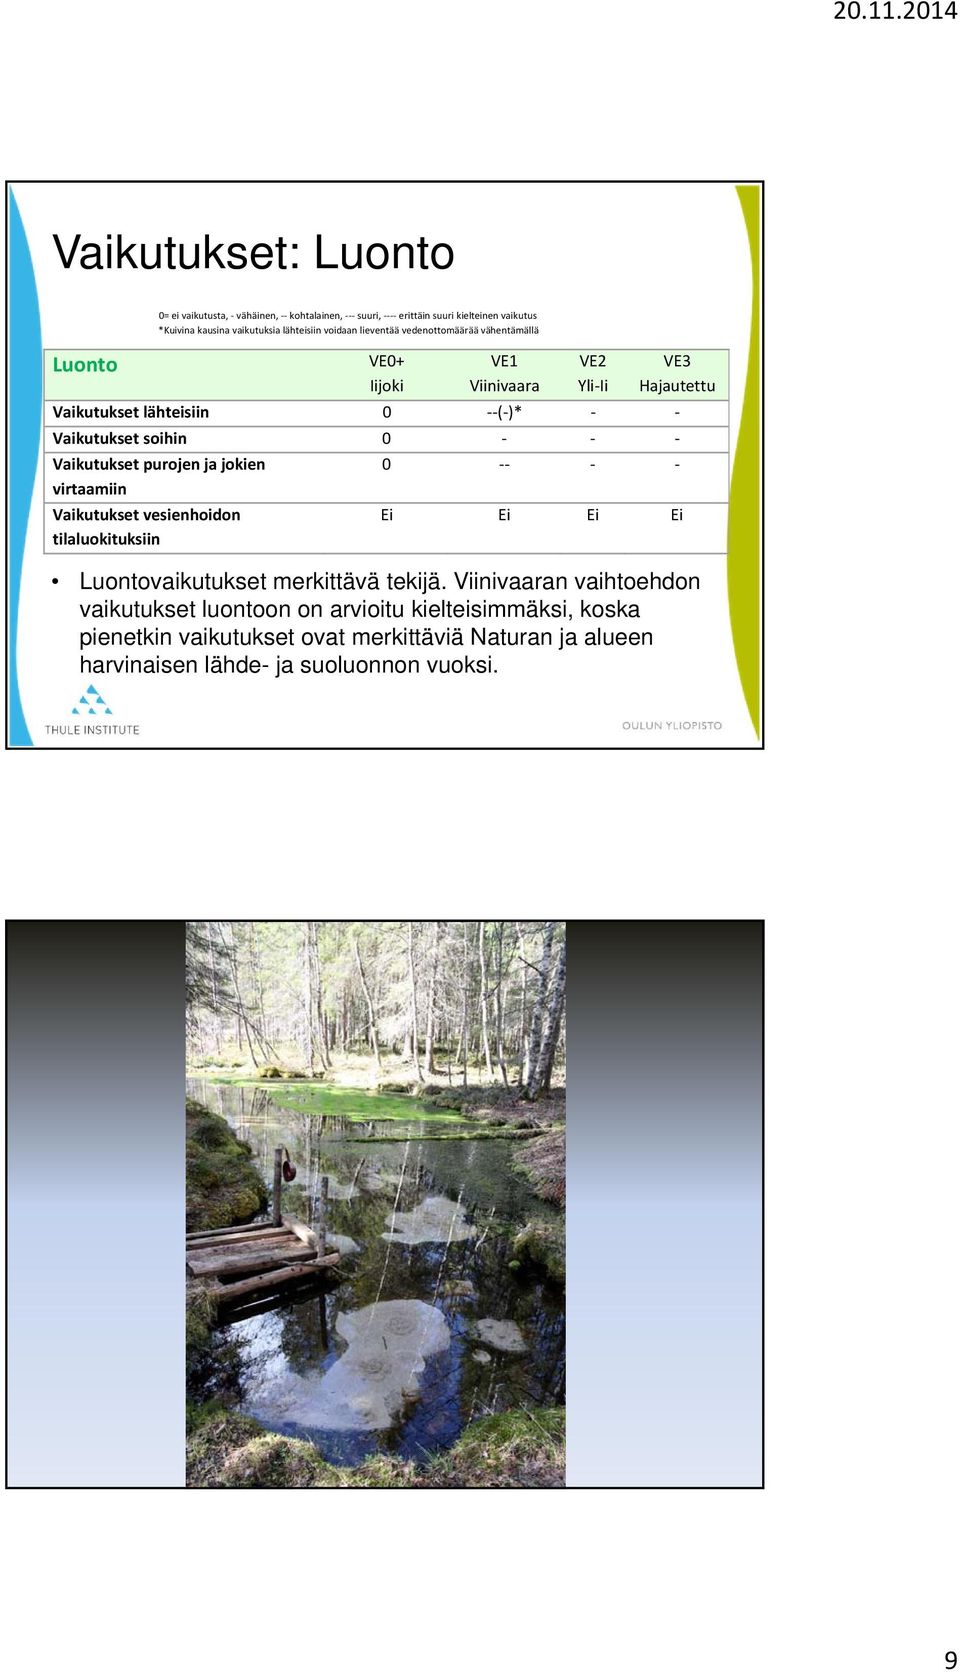 Vaikutukset purojen ja jokien virtaamiin Vaikutukset vesienhoidon tilaluokituksiin 0 Ei Ei Ei Ei Luontovaikutukset merkittävä tekijä.